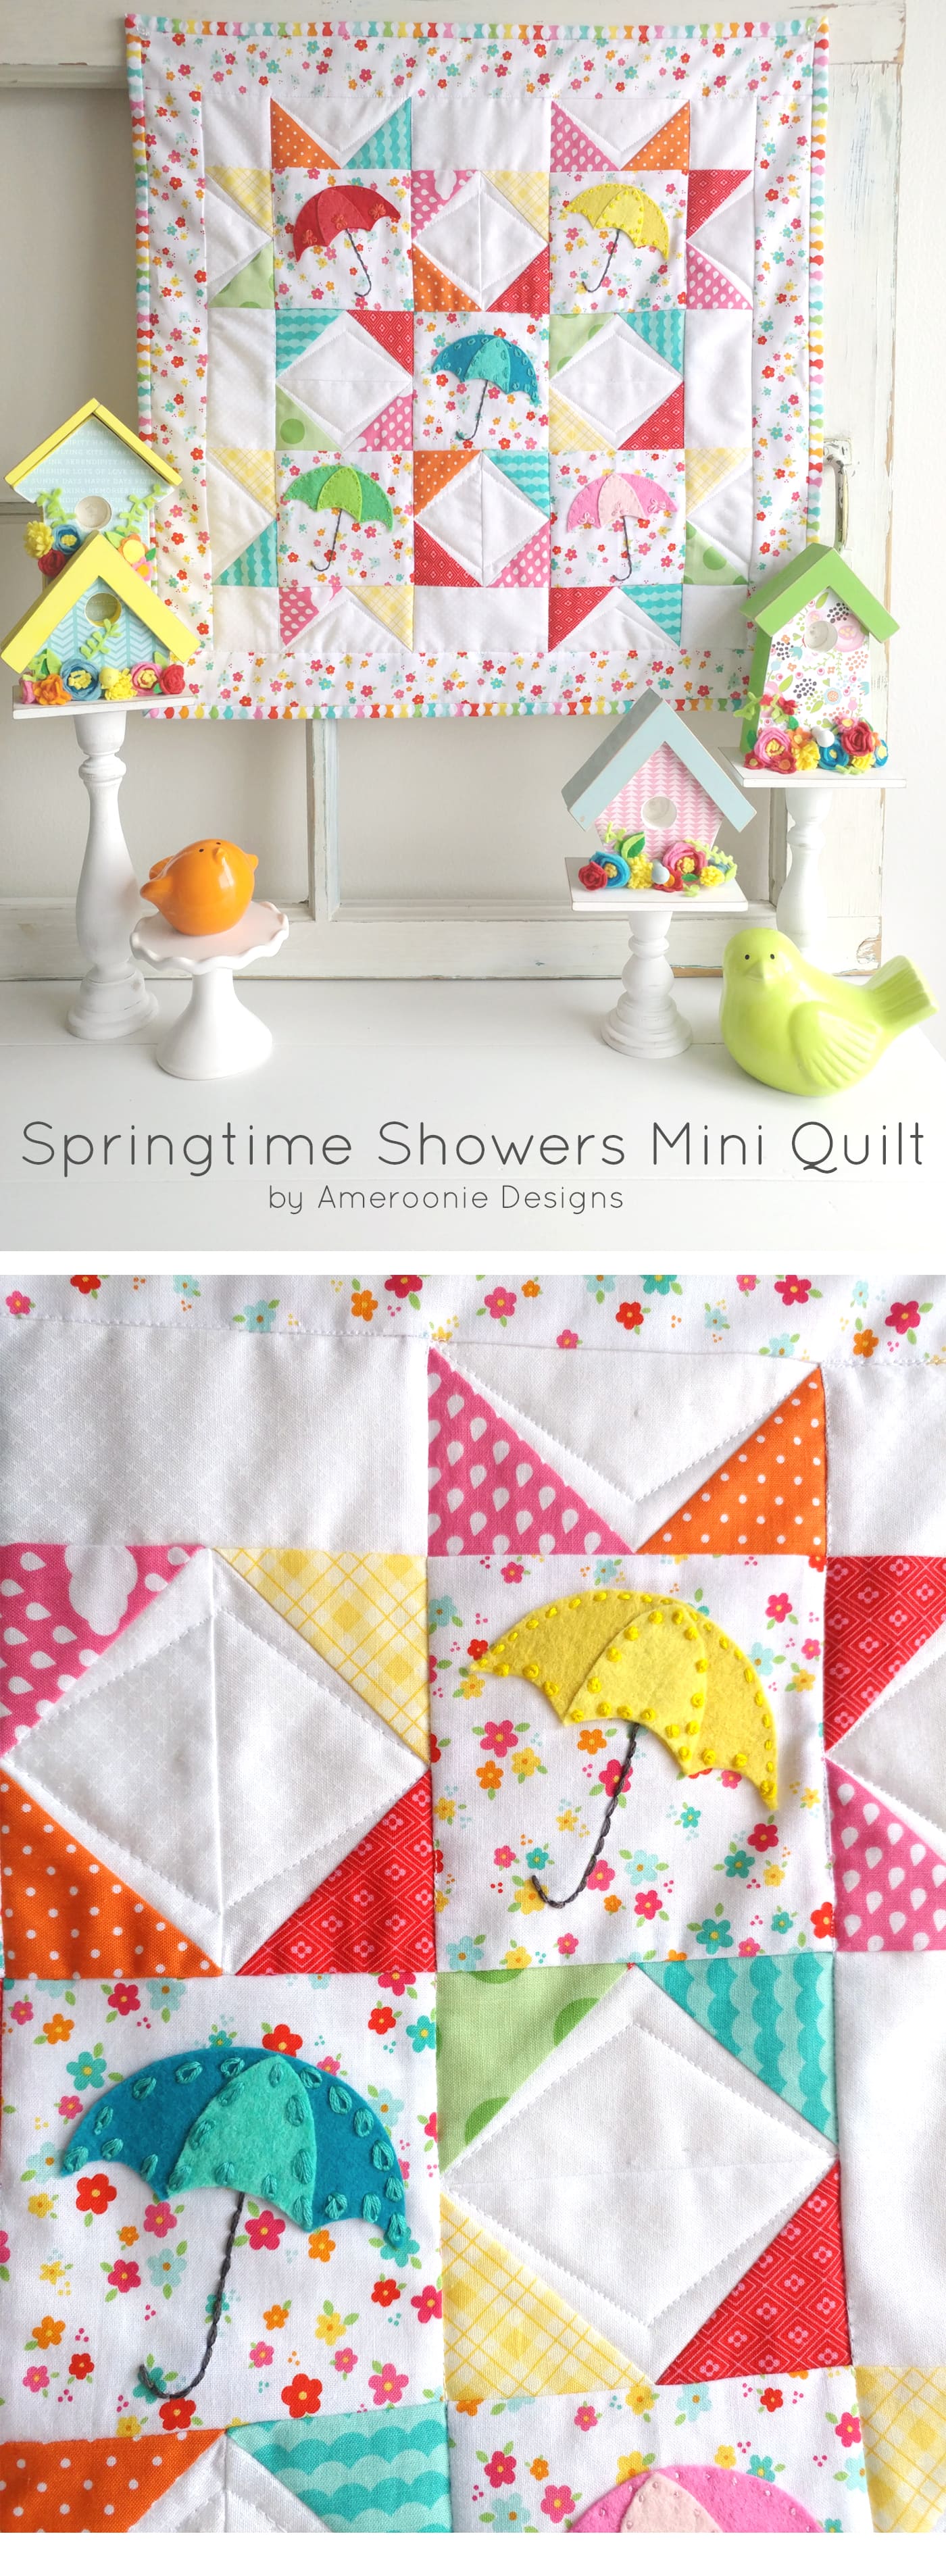 Modèle de courtepointe gratuit pour les douches printanières ; serait aussi un joli oreiller DIY pour le printemps. #miniquilt #miniquiltmotif